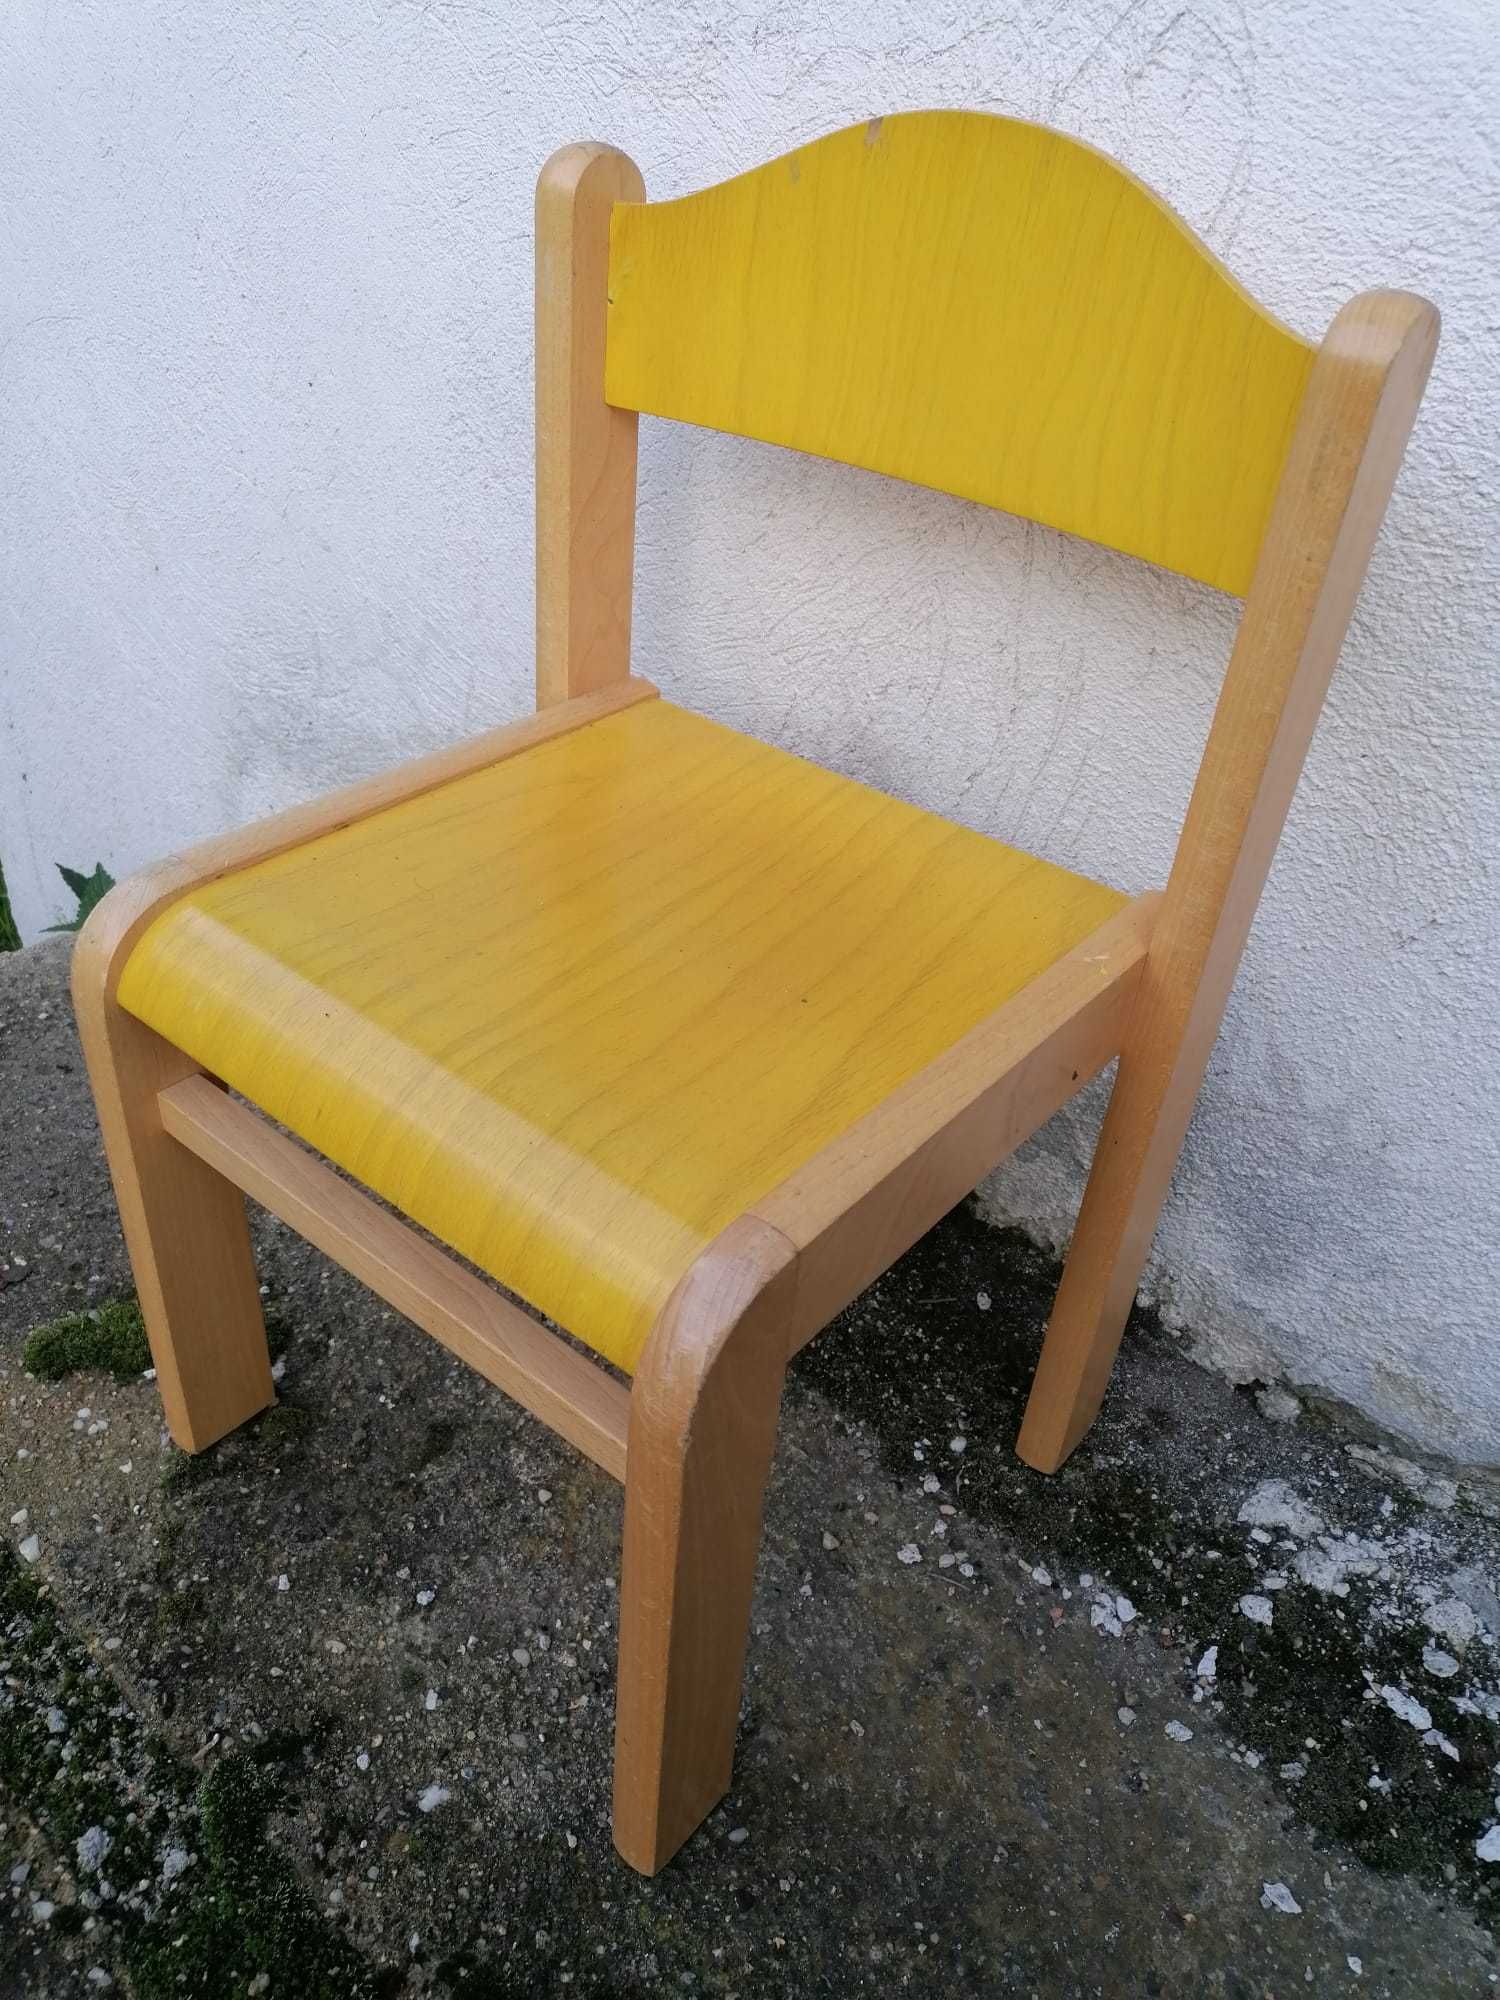 Krzesła przedszkolne